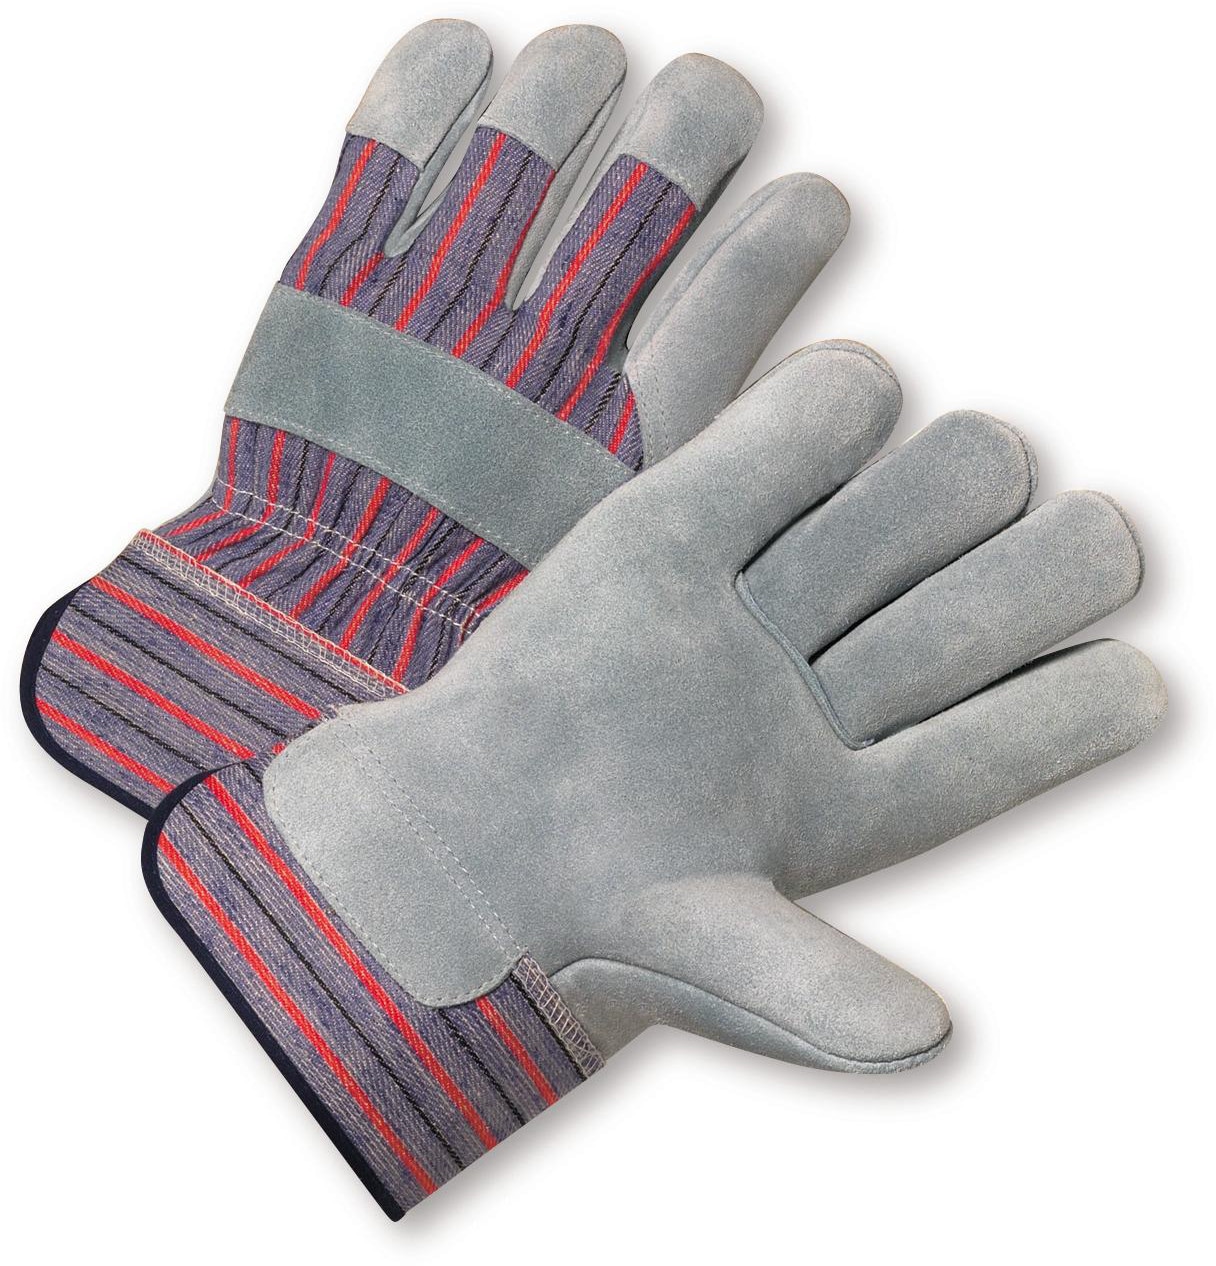 Do it Men's Large PVC Grip Cotton Canvas Work Glove